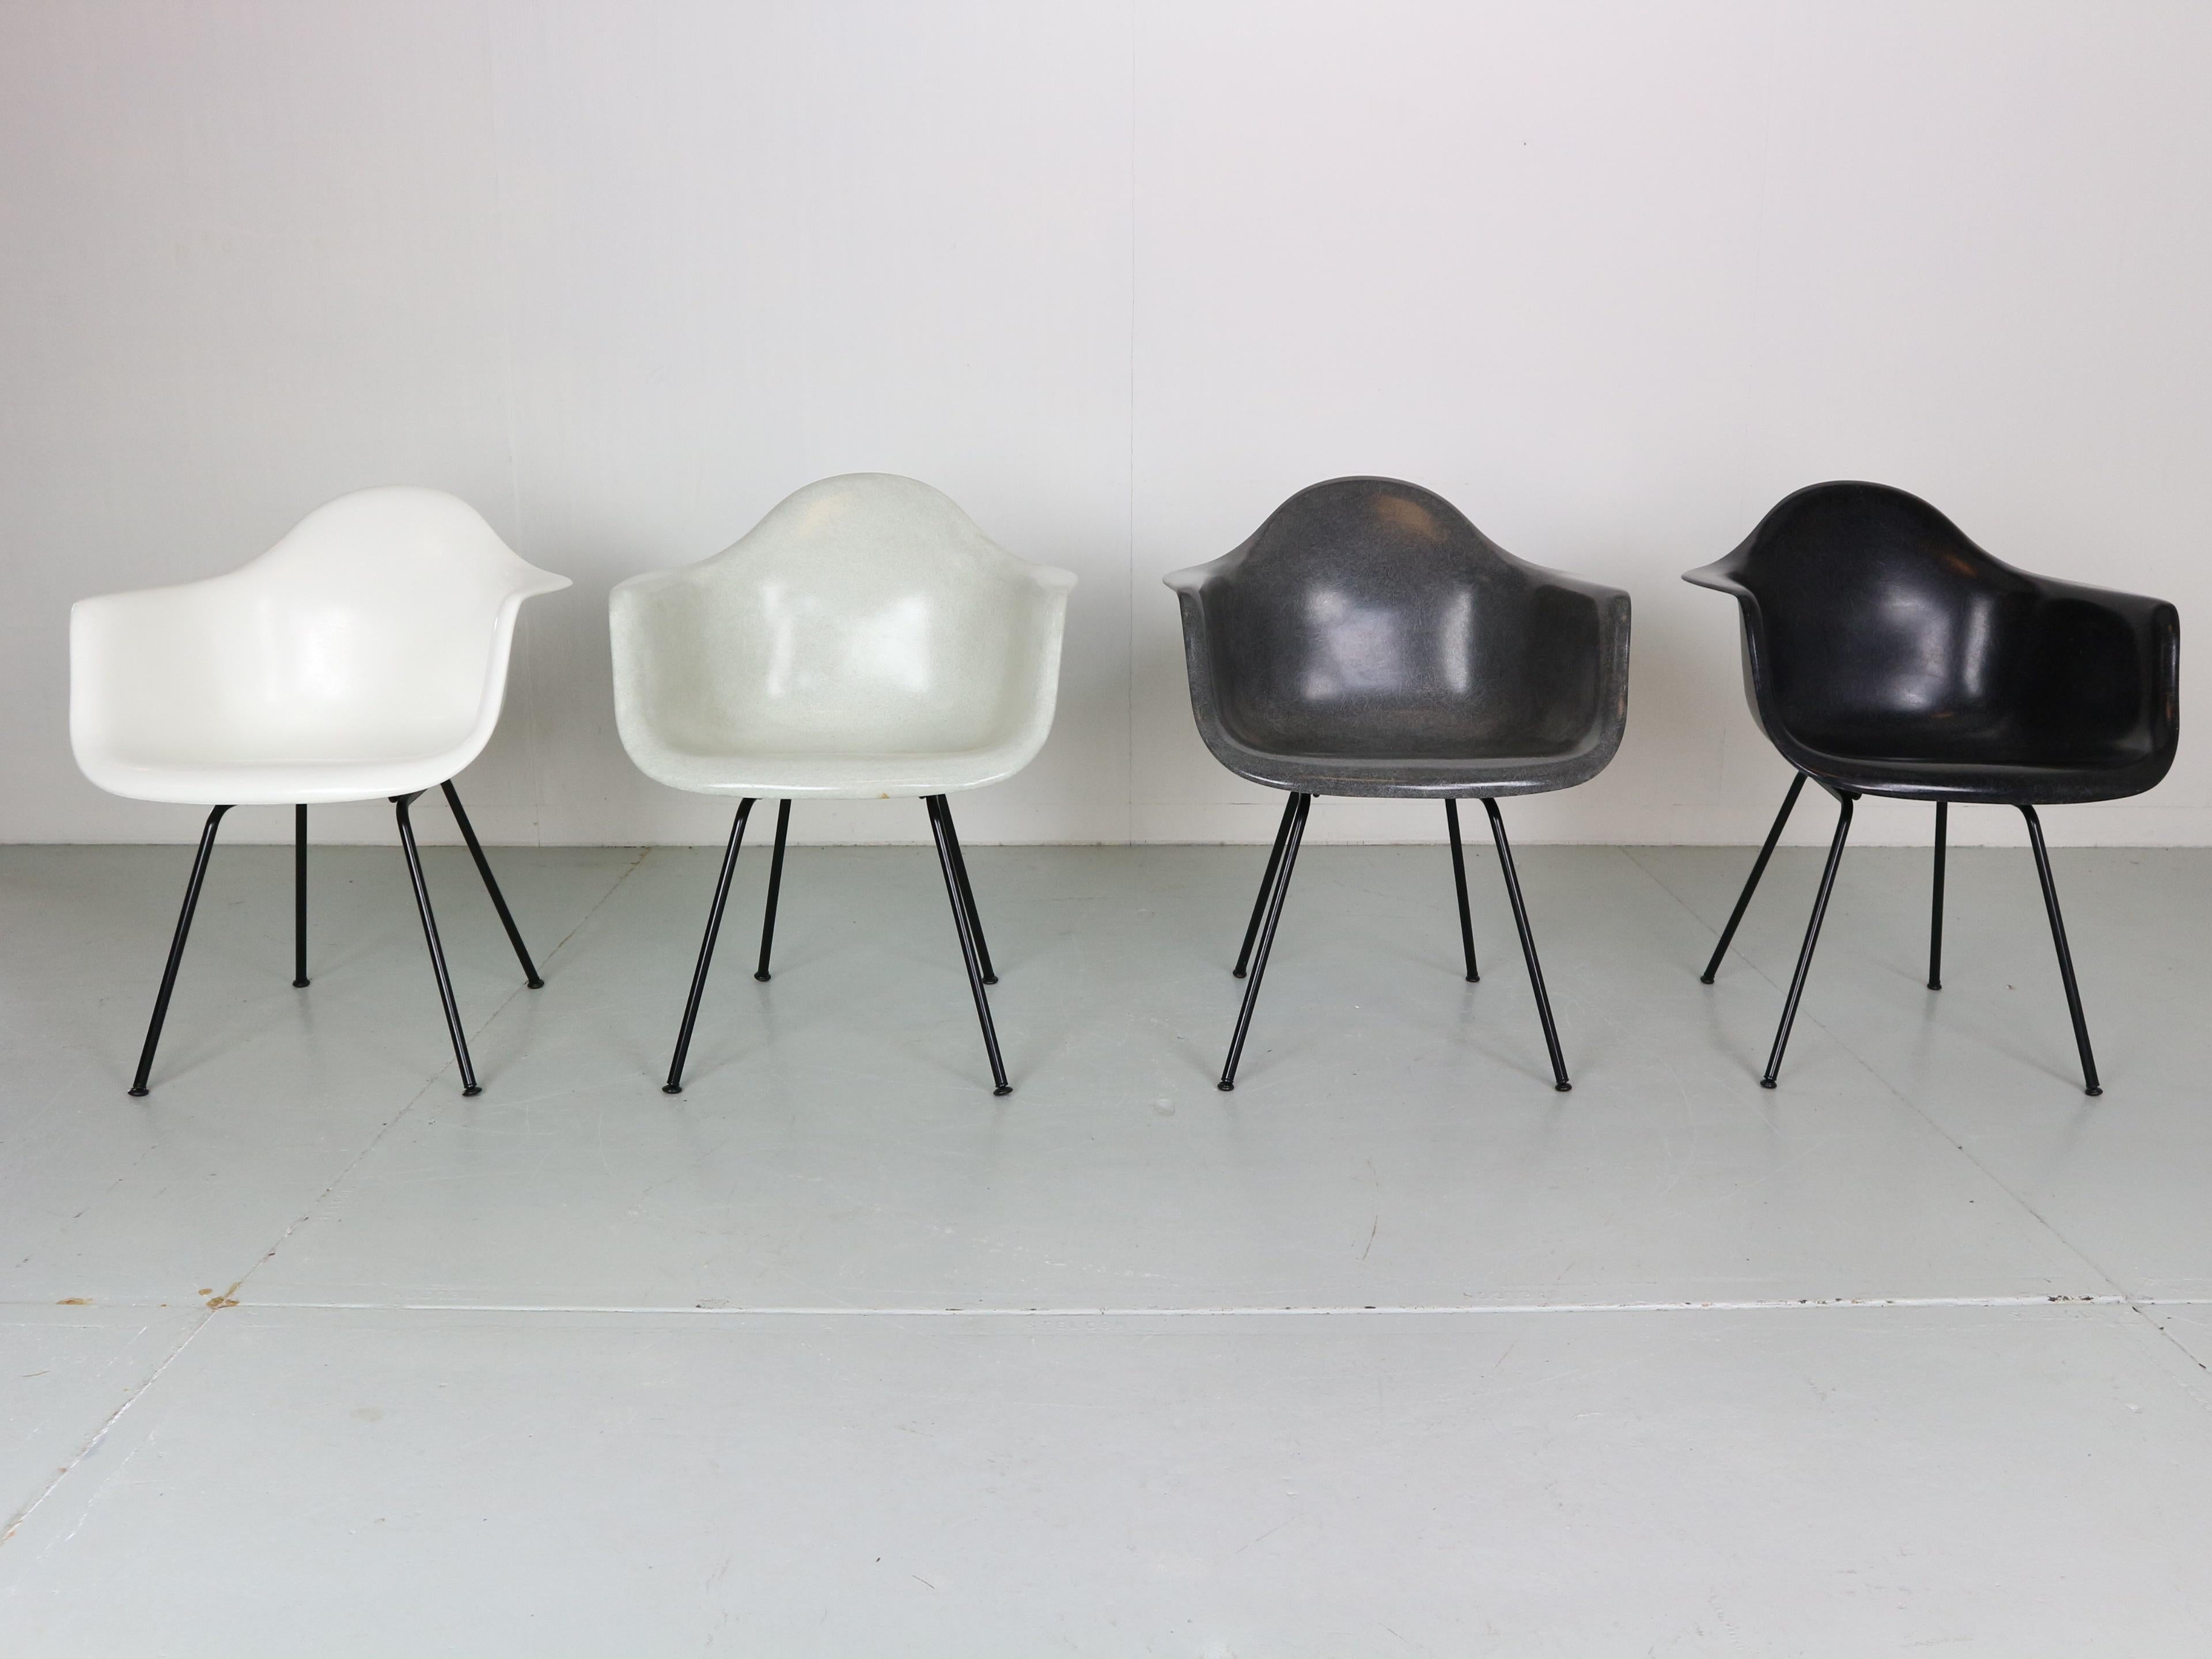 Magnifique ensemble de fauteuils de la période moderne du milieu du siècle, conçu par Charles & Ray Eames et produit par Modernica vers les années 1970.

Tous les fauteuils sont multicolores ! Du blanc au blanc cassé en passant par le gris et le